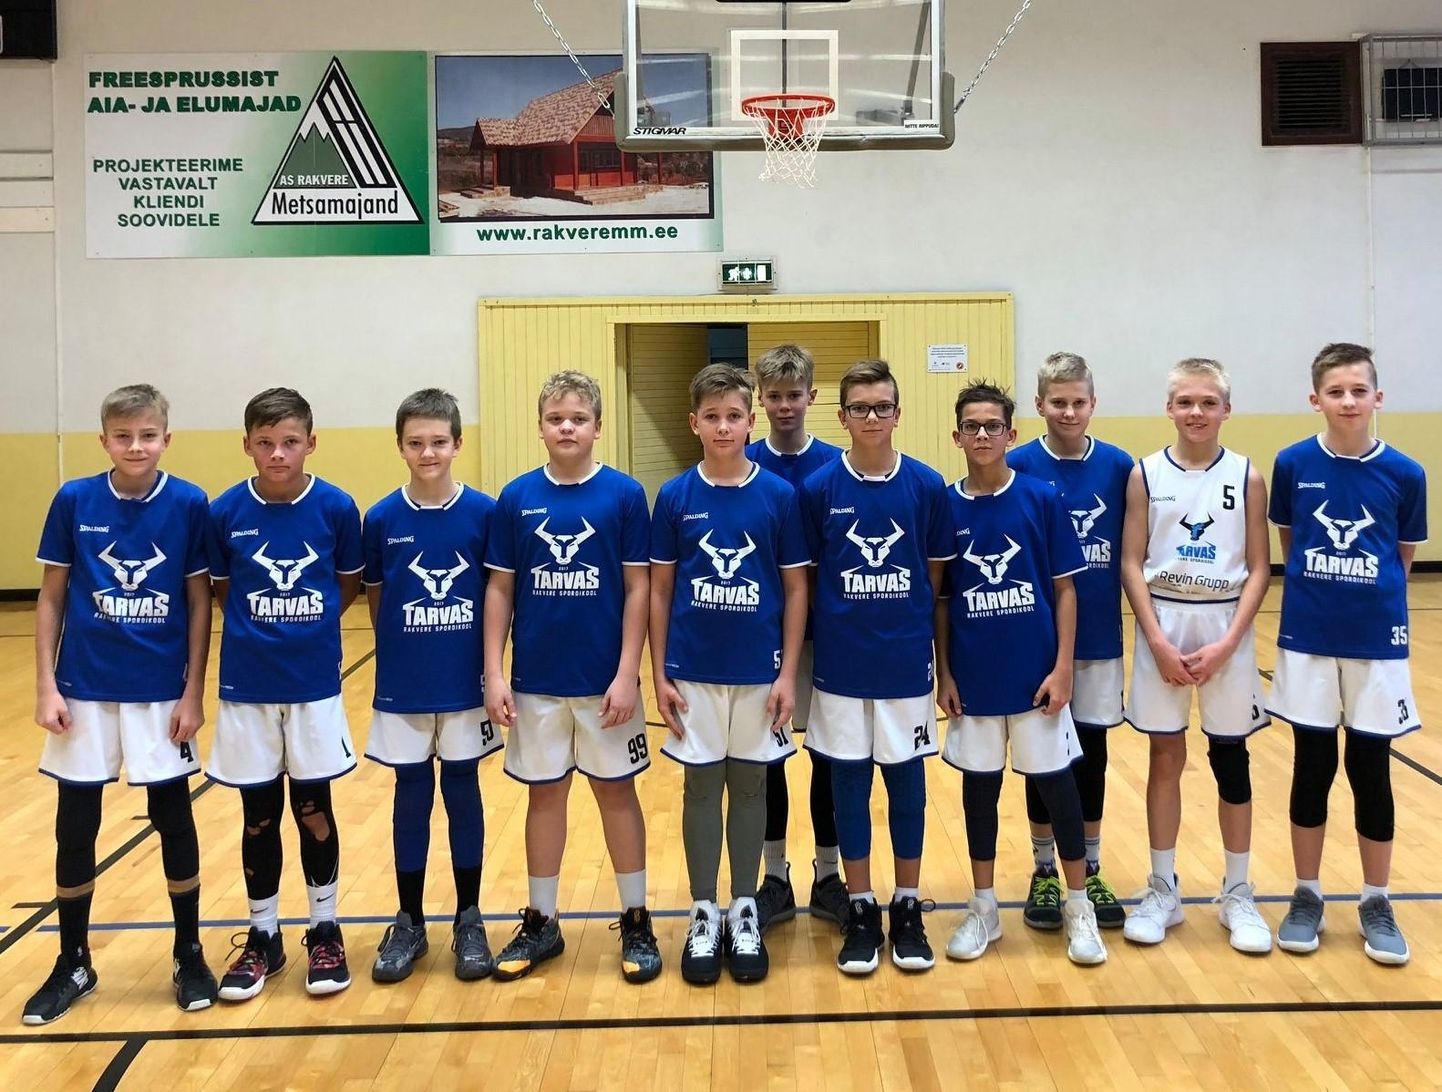 Rakvere Spordikool / Tarva kuni 14-aastased korvpallipoisid võitsid aasta tagasi Eesti korvpallikarika. Tänavu püüab samas vanusearvestuses nende tulemust korrata uus tiim.